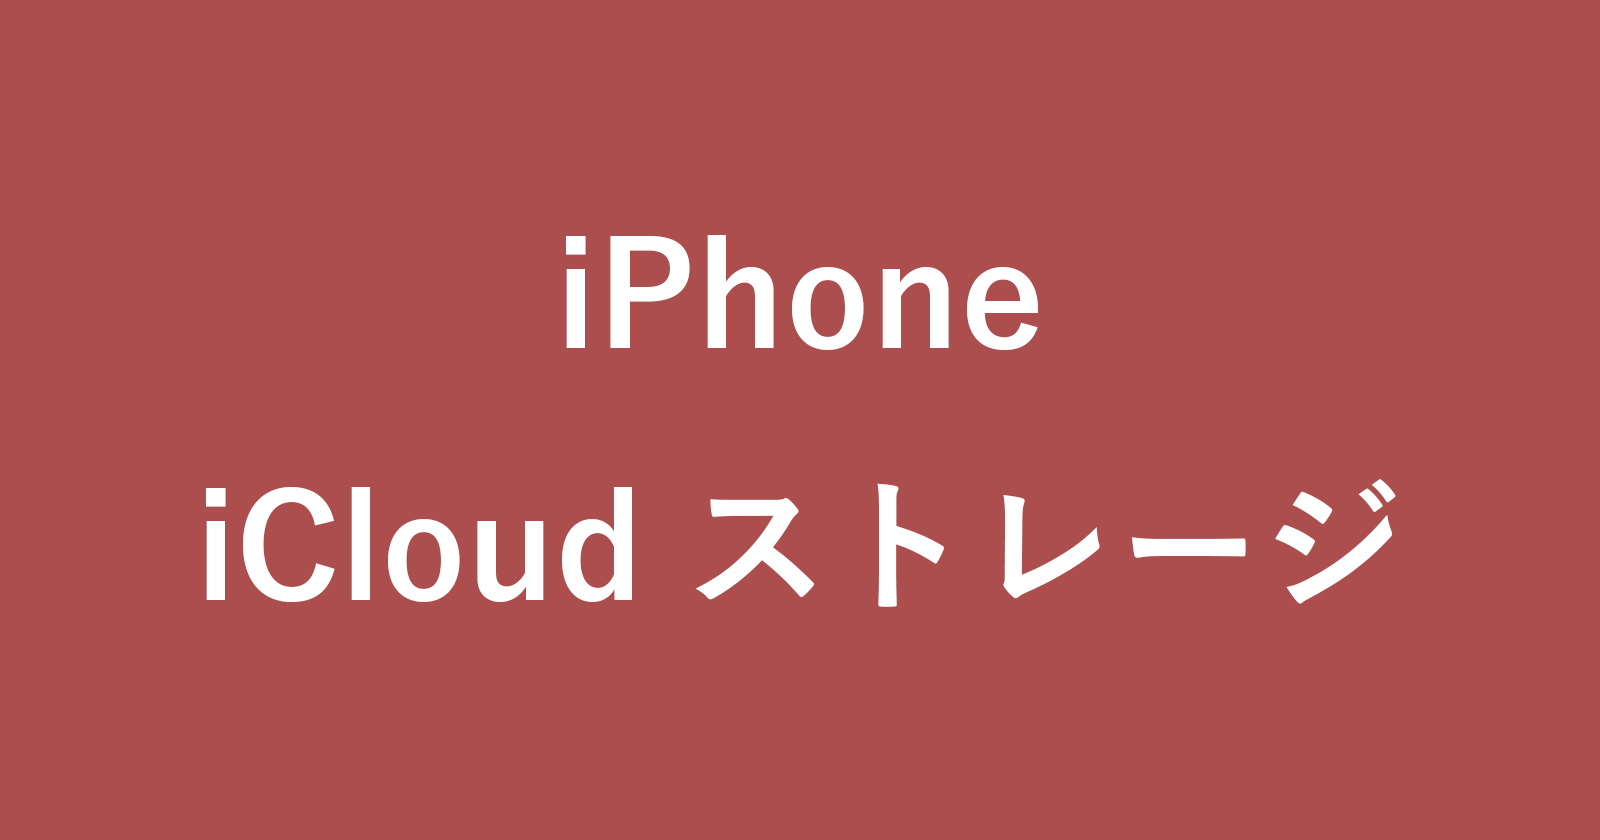 iphone icloud storage